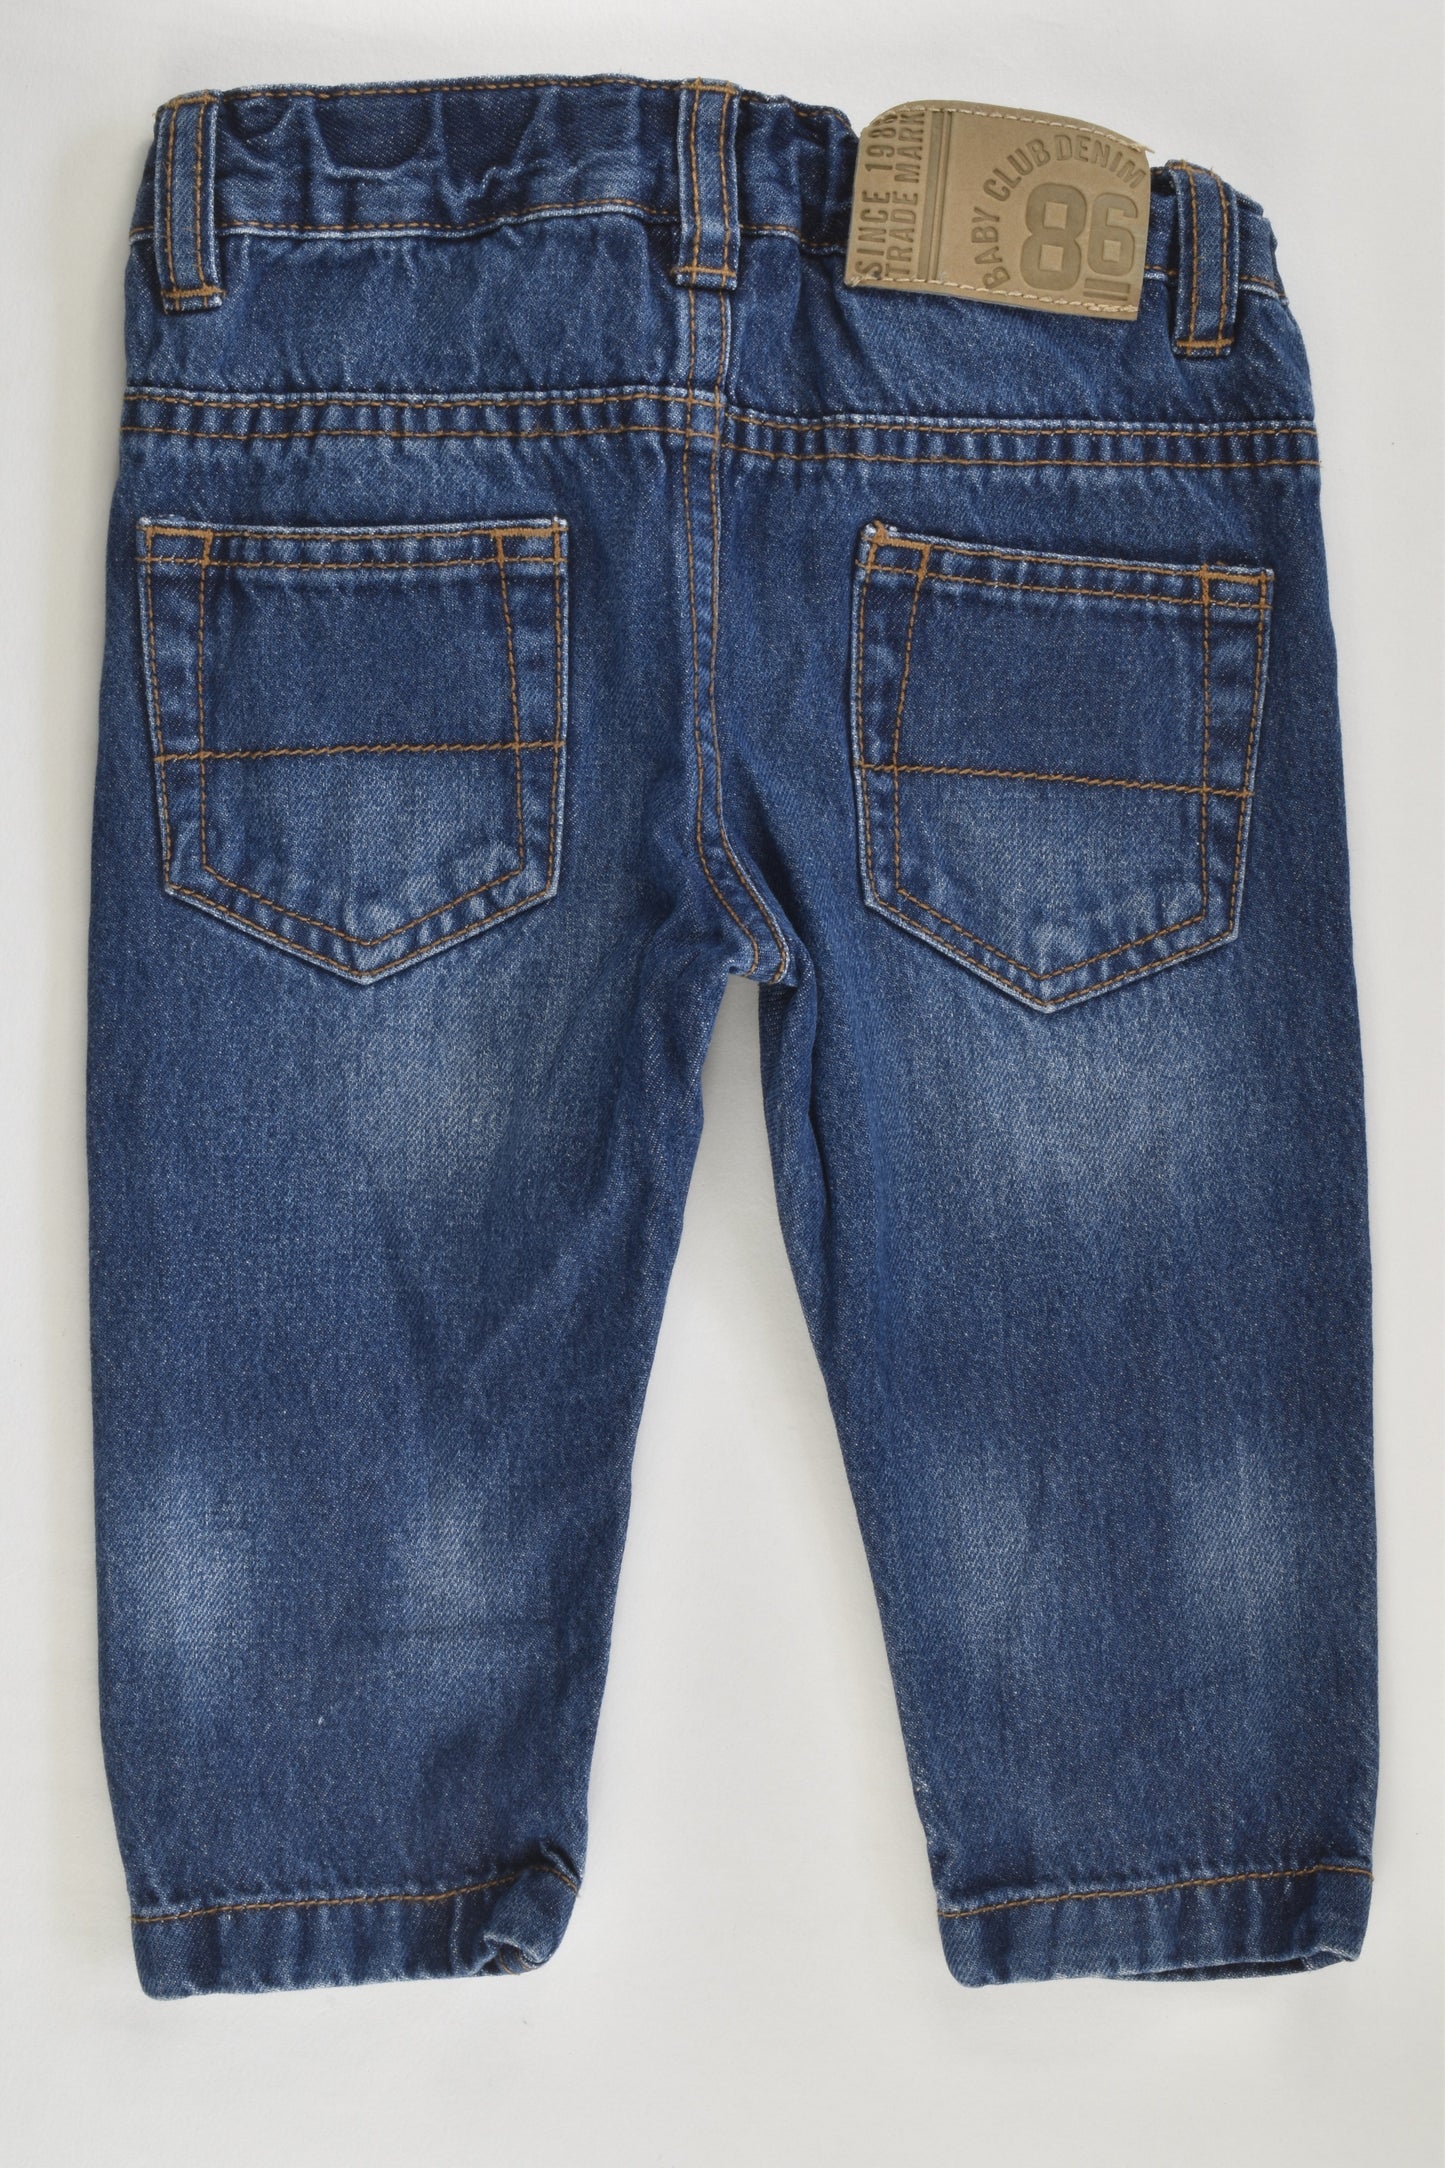 Target Size 00 (3-6 months) Denim Pants